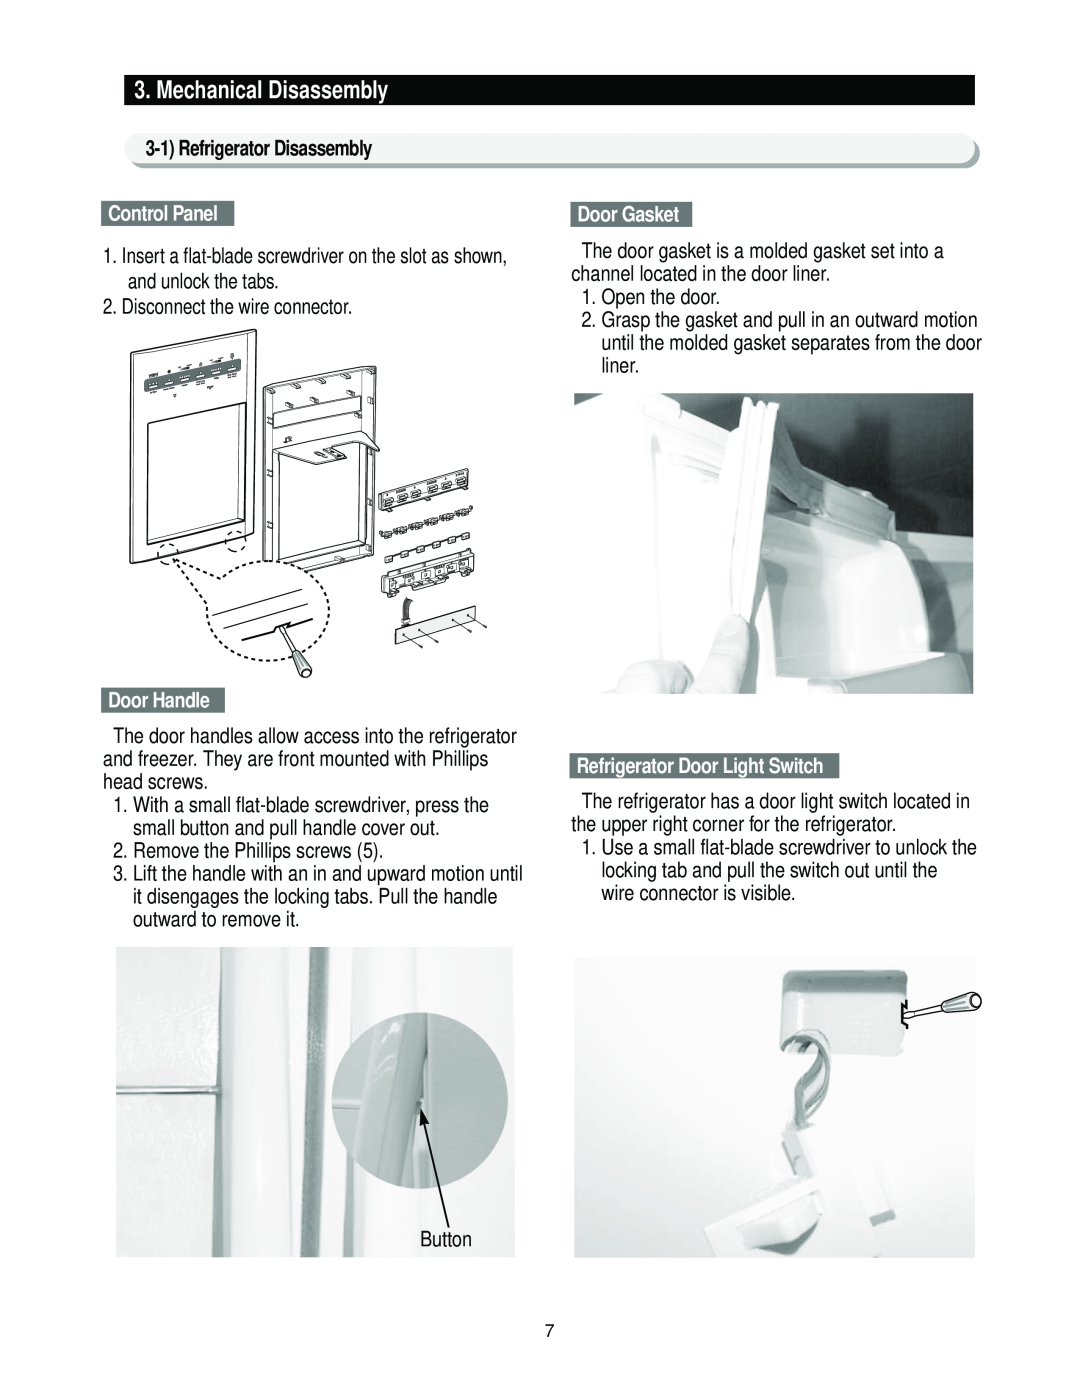 Samsung RS2*3* manual Control Panel, Door Handle, Door Gasket, Refrigerator Door Light Switch, Mechanical Disassembly 